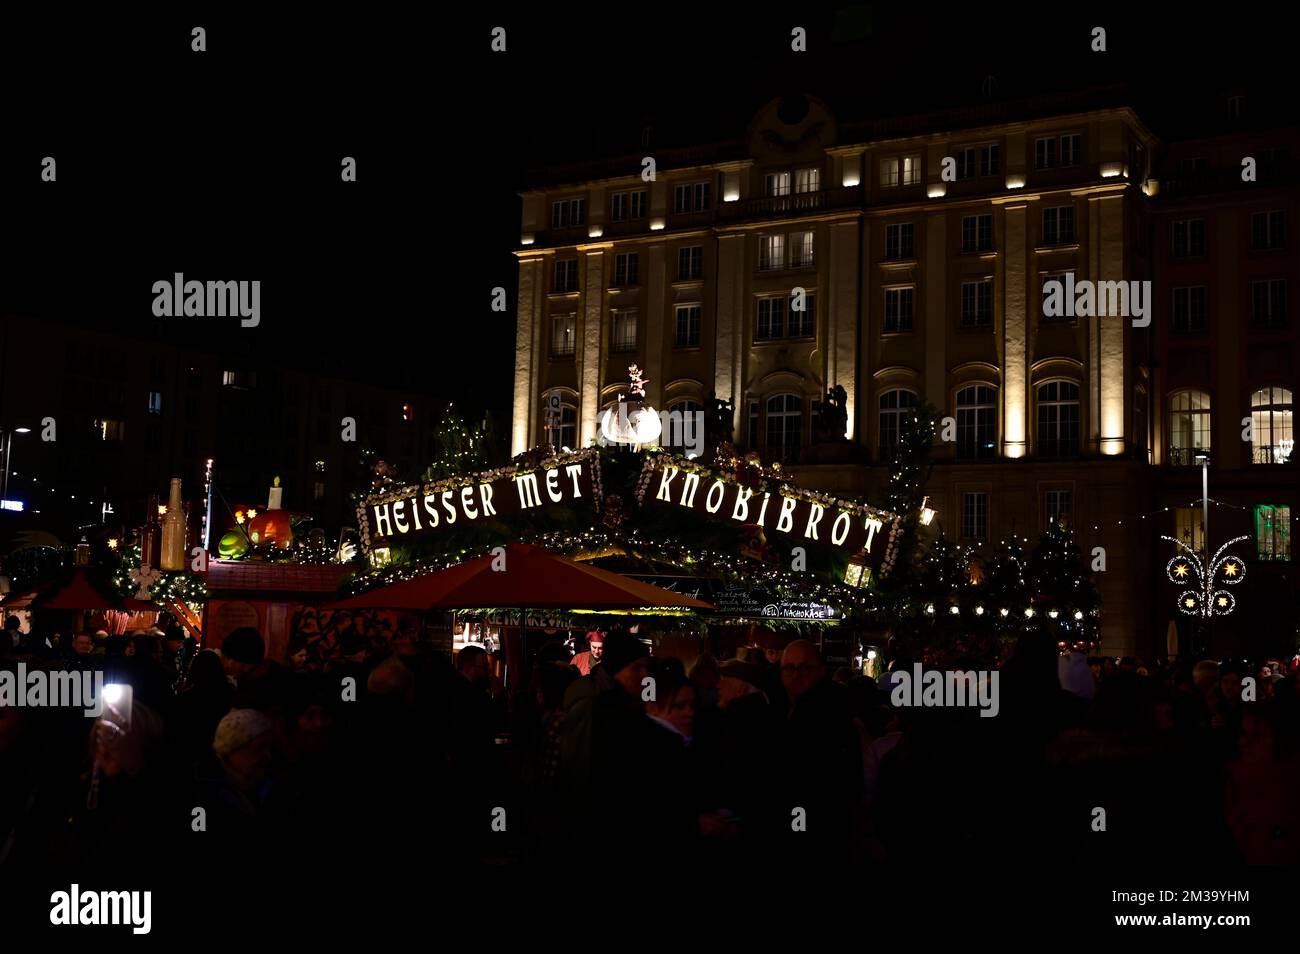 Der 588. Dresdner Striezelmarkt auf dem Altmarkt. Der Striezelmarkt ist der älteste Weihnachtsmarkt Deutschlands. Dresda, 09.12.2022 Foto Stock